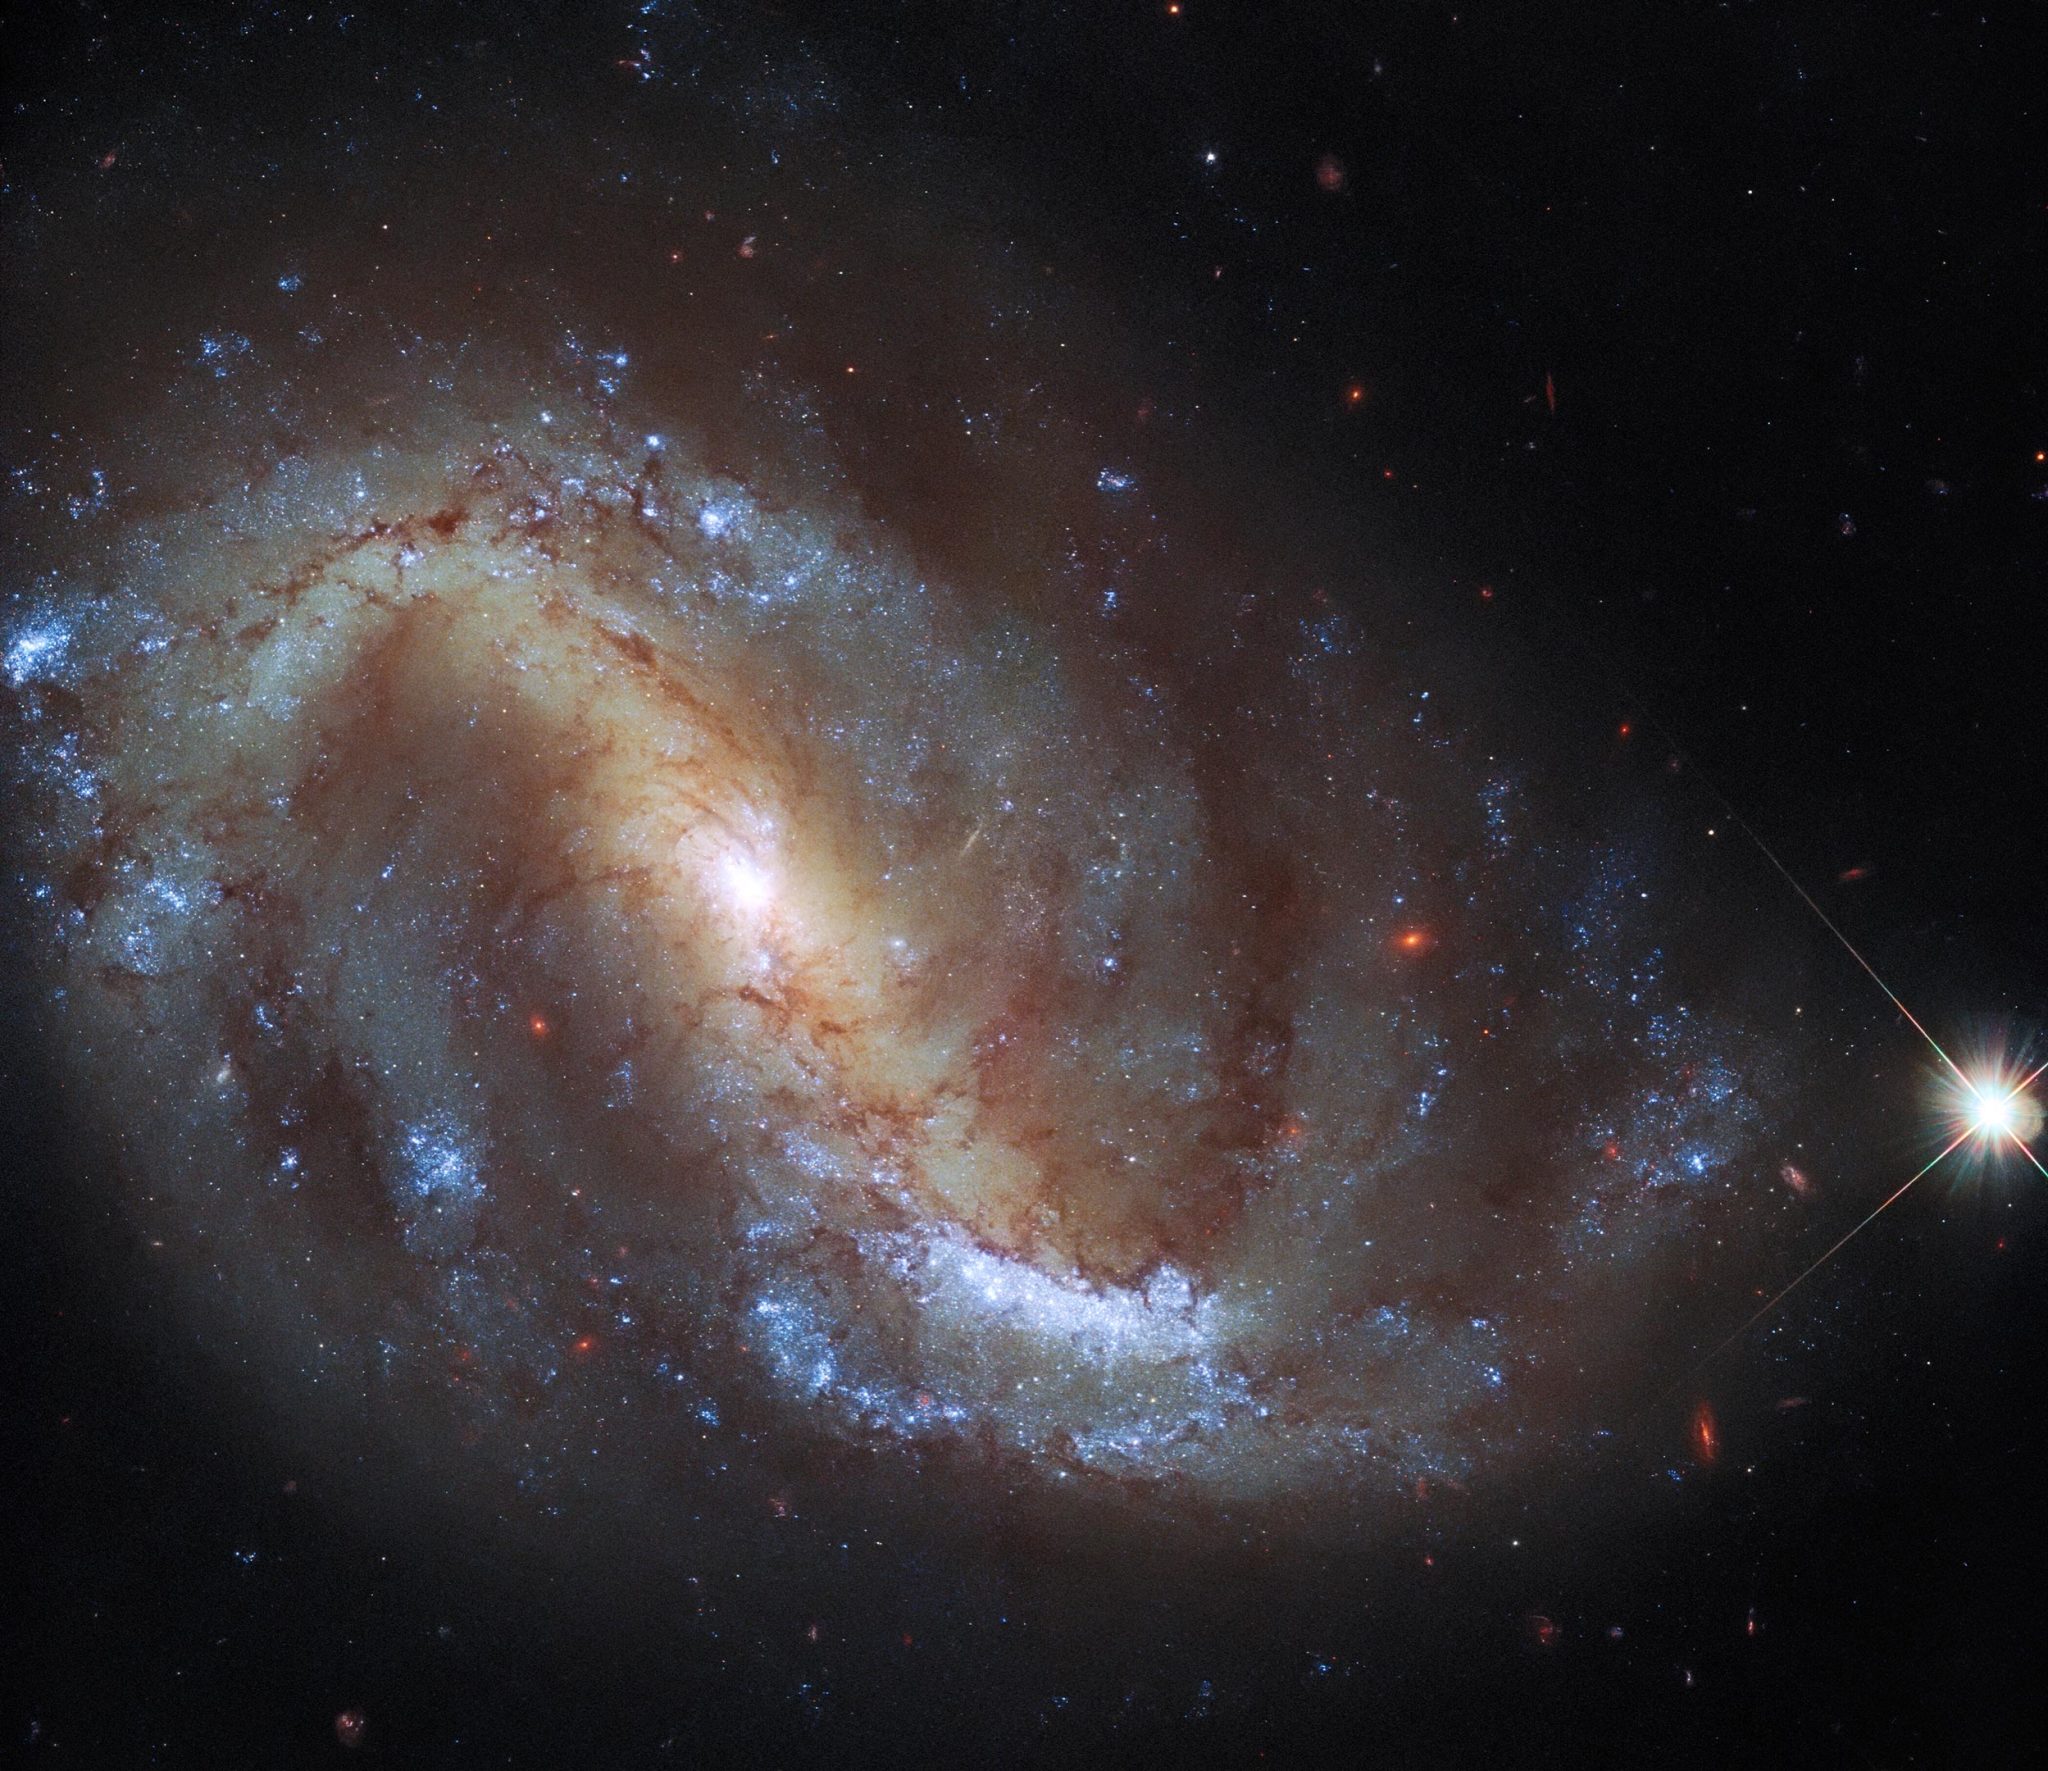 Telescopio espacial Hubble lanza observación de aves galácticas